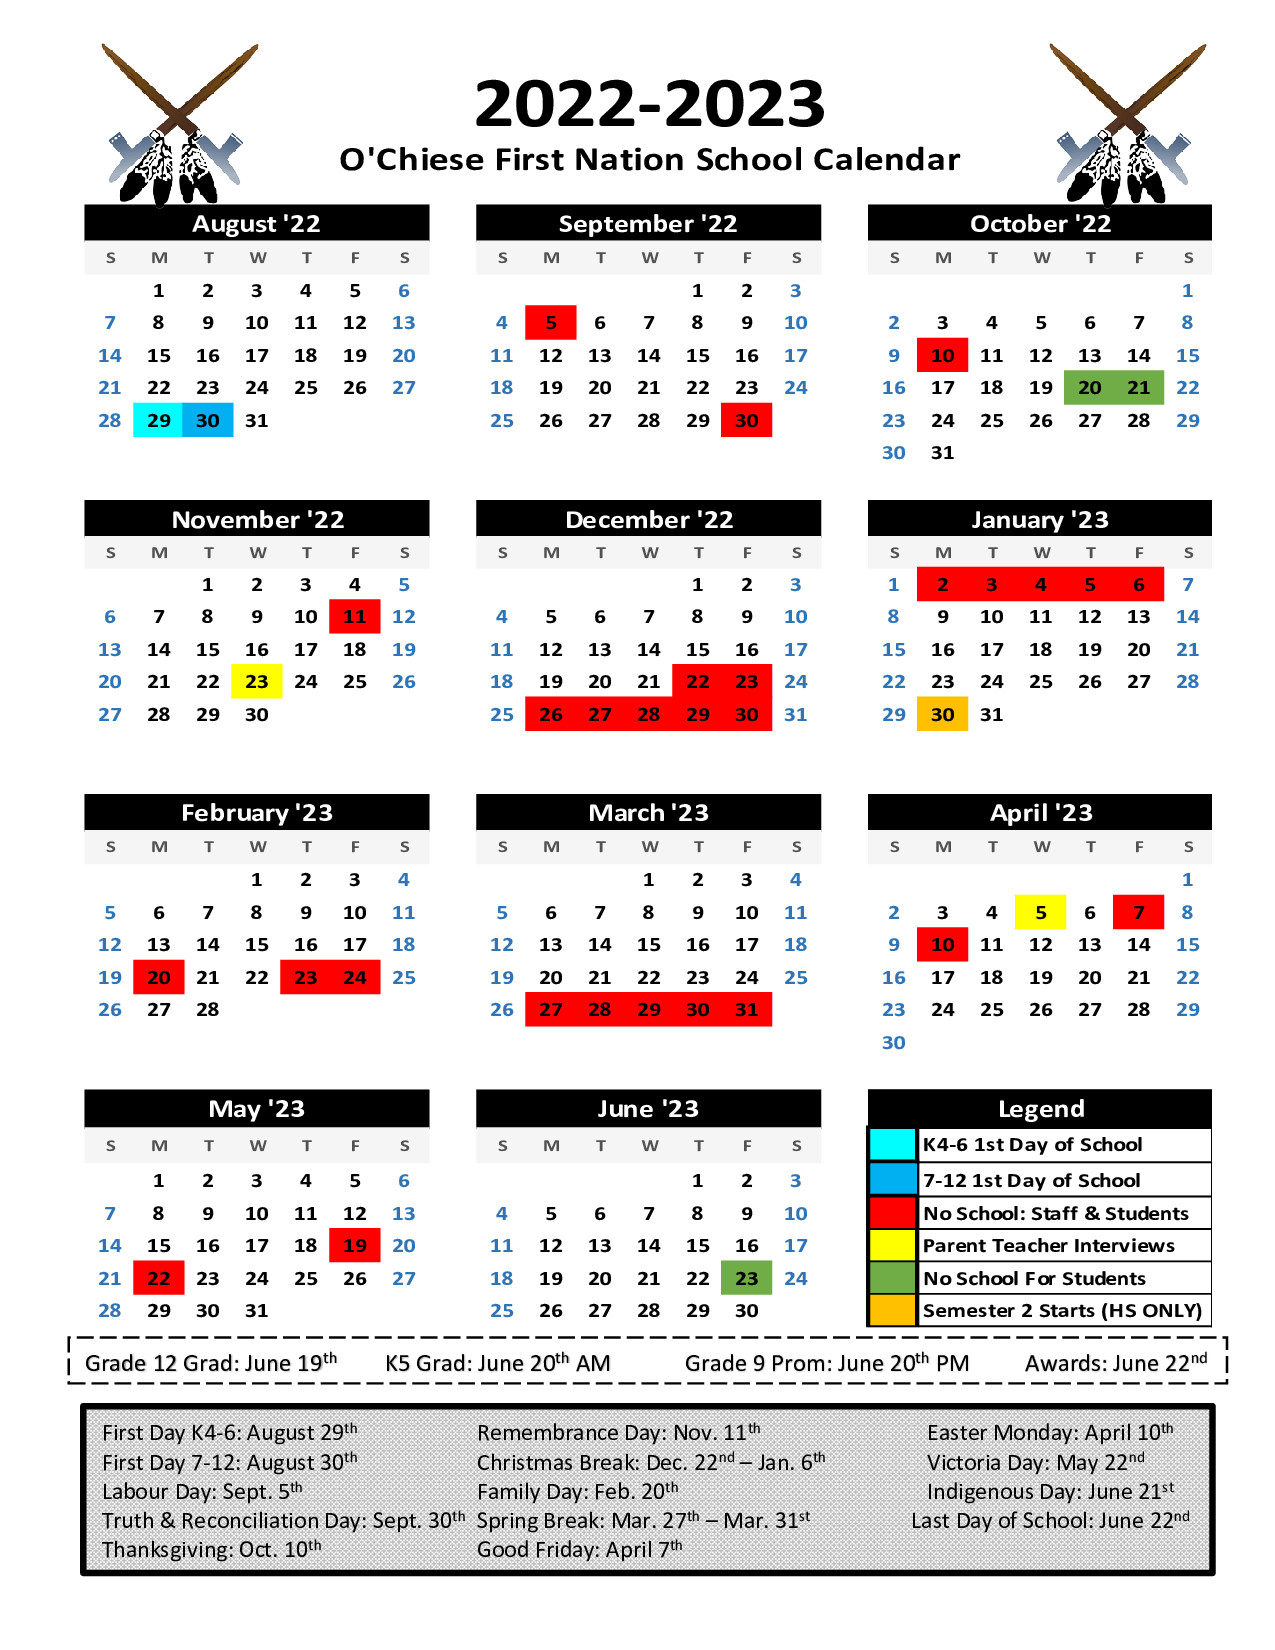 school calendar for the 2022-2023 school year